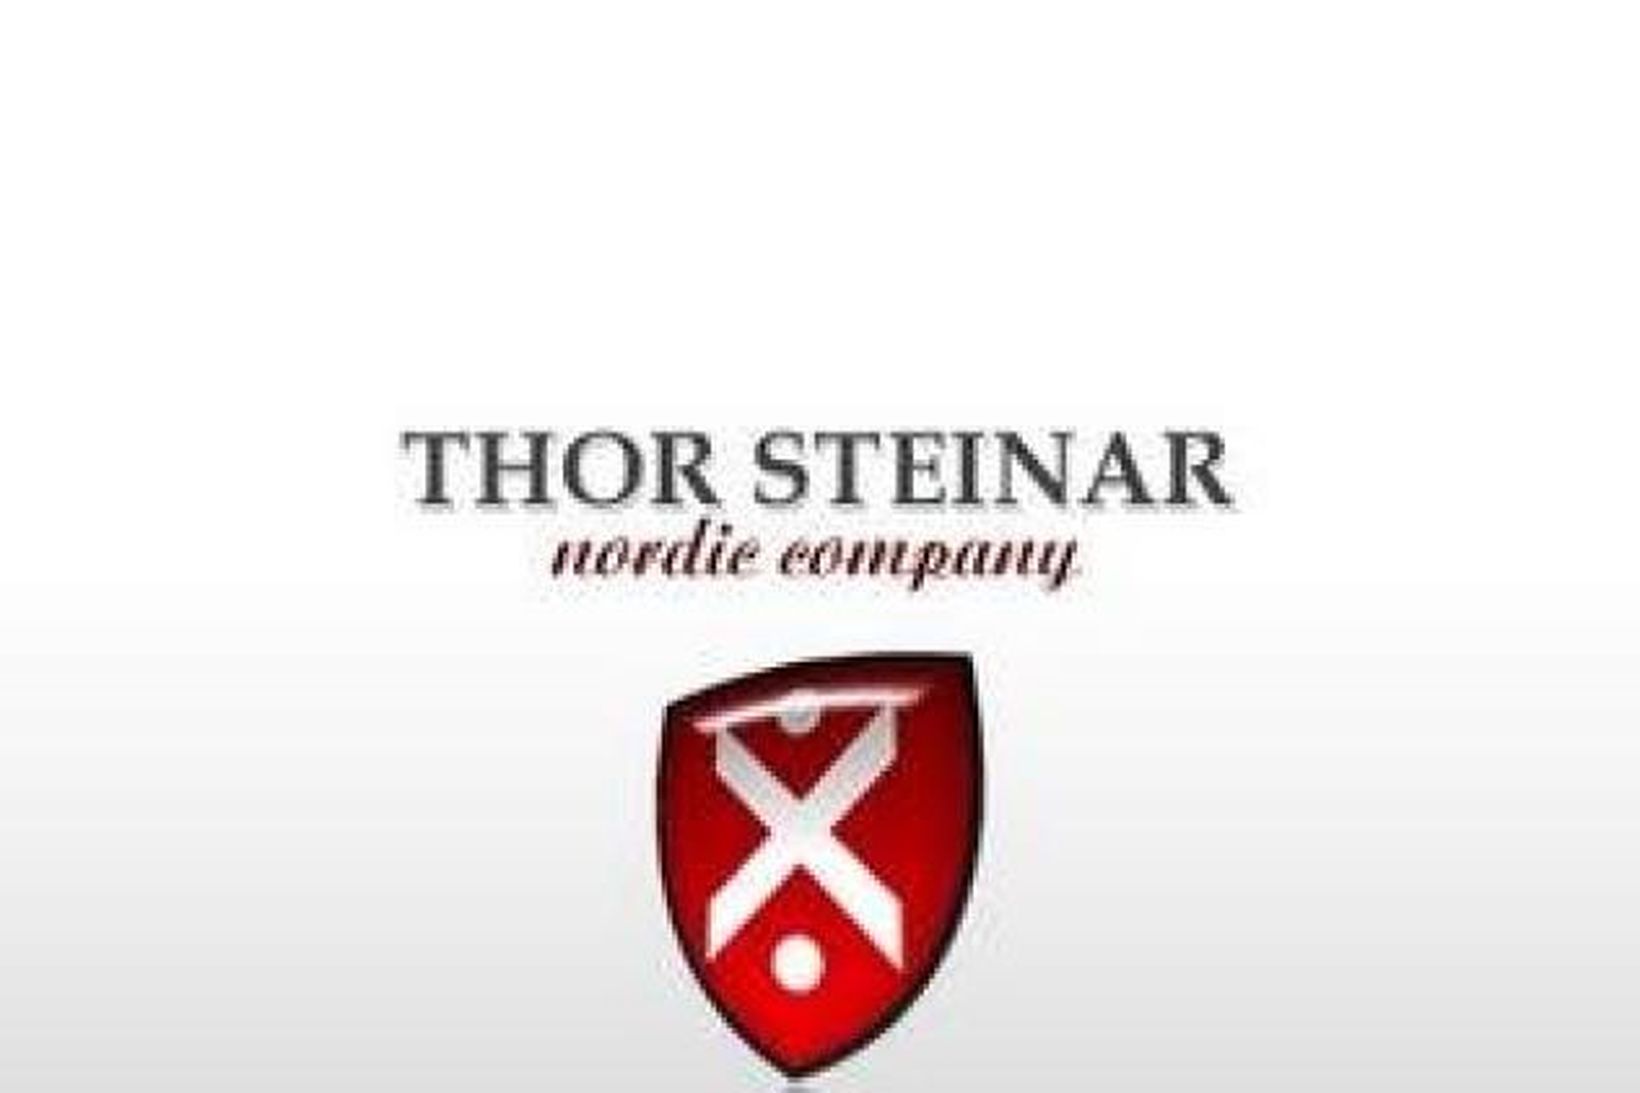 Merki Thor Steiner